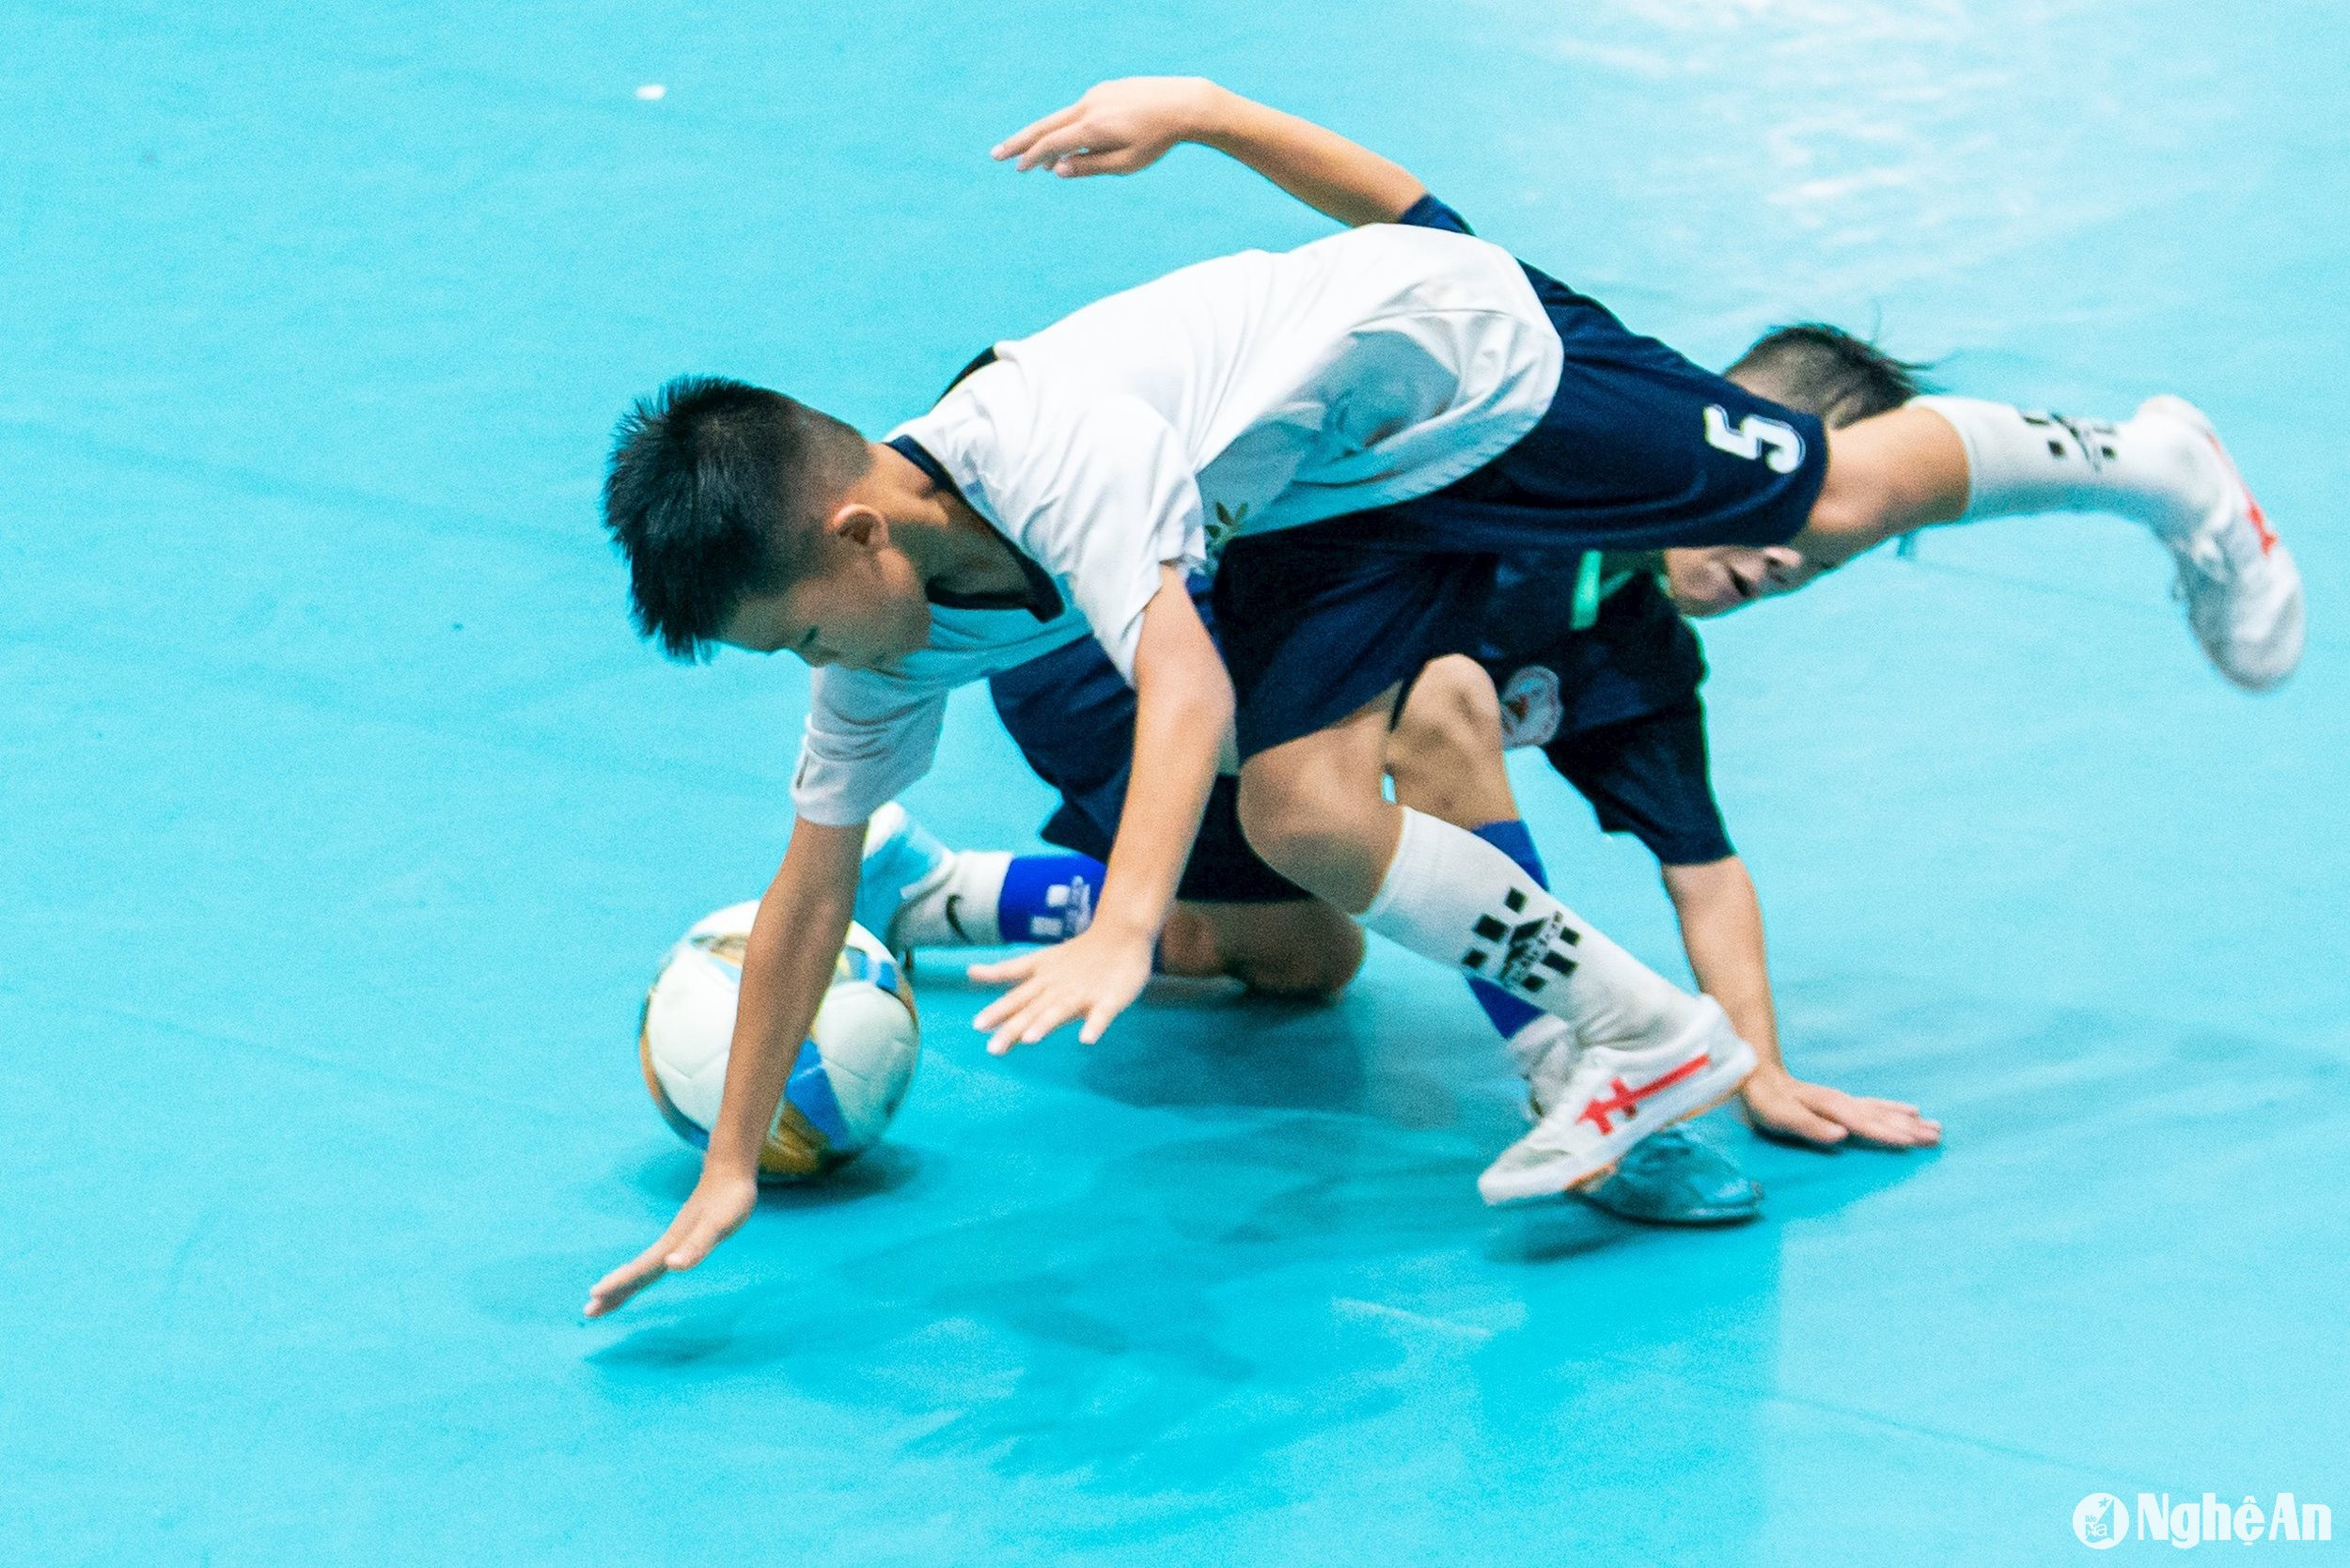 Một pha tranh chấp bóng giữa cầu thủ 2 đội. Ảnh: Nguyễn Đạo